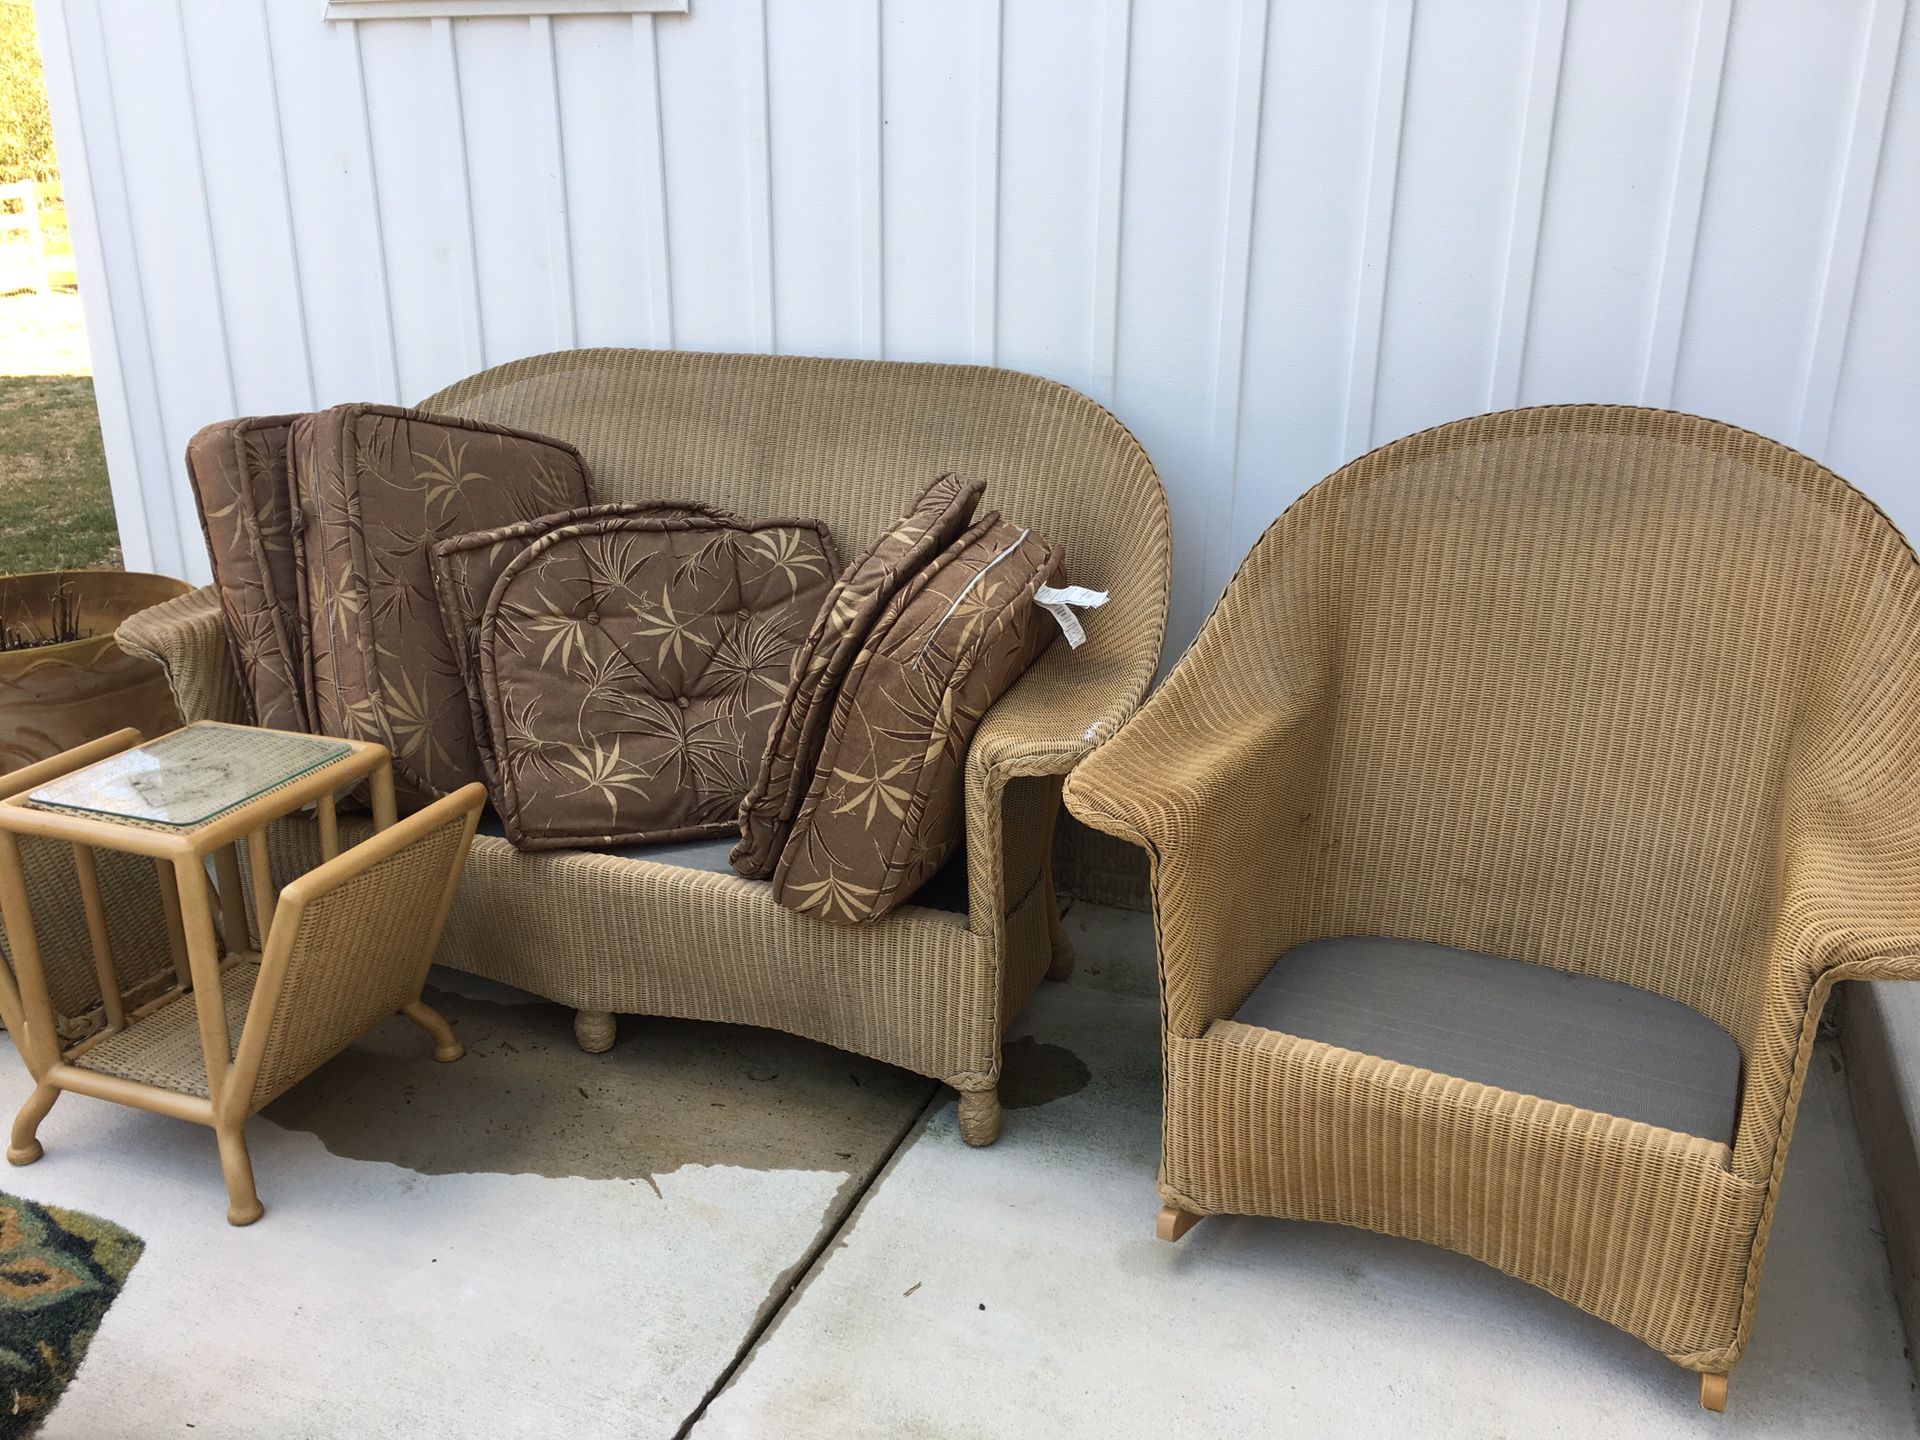 Wicker indoor/outdoor furniture